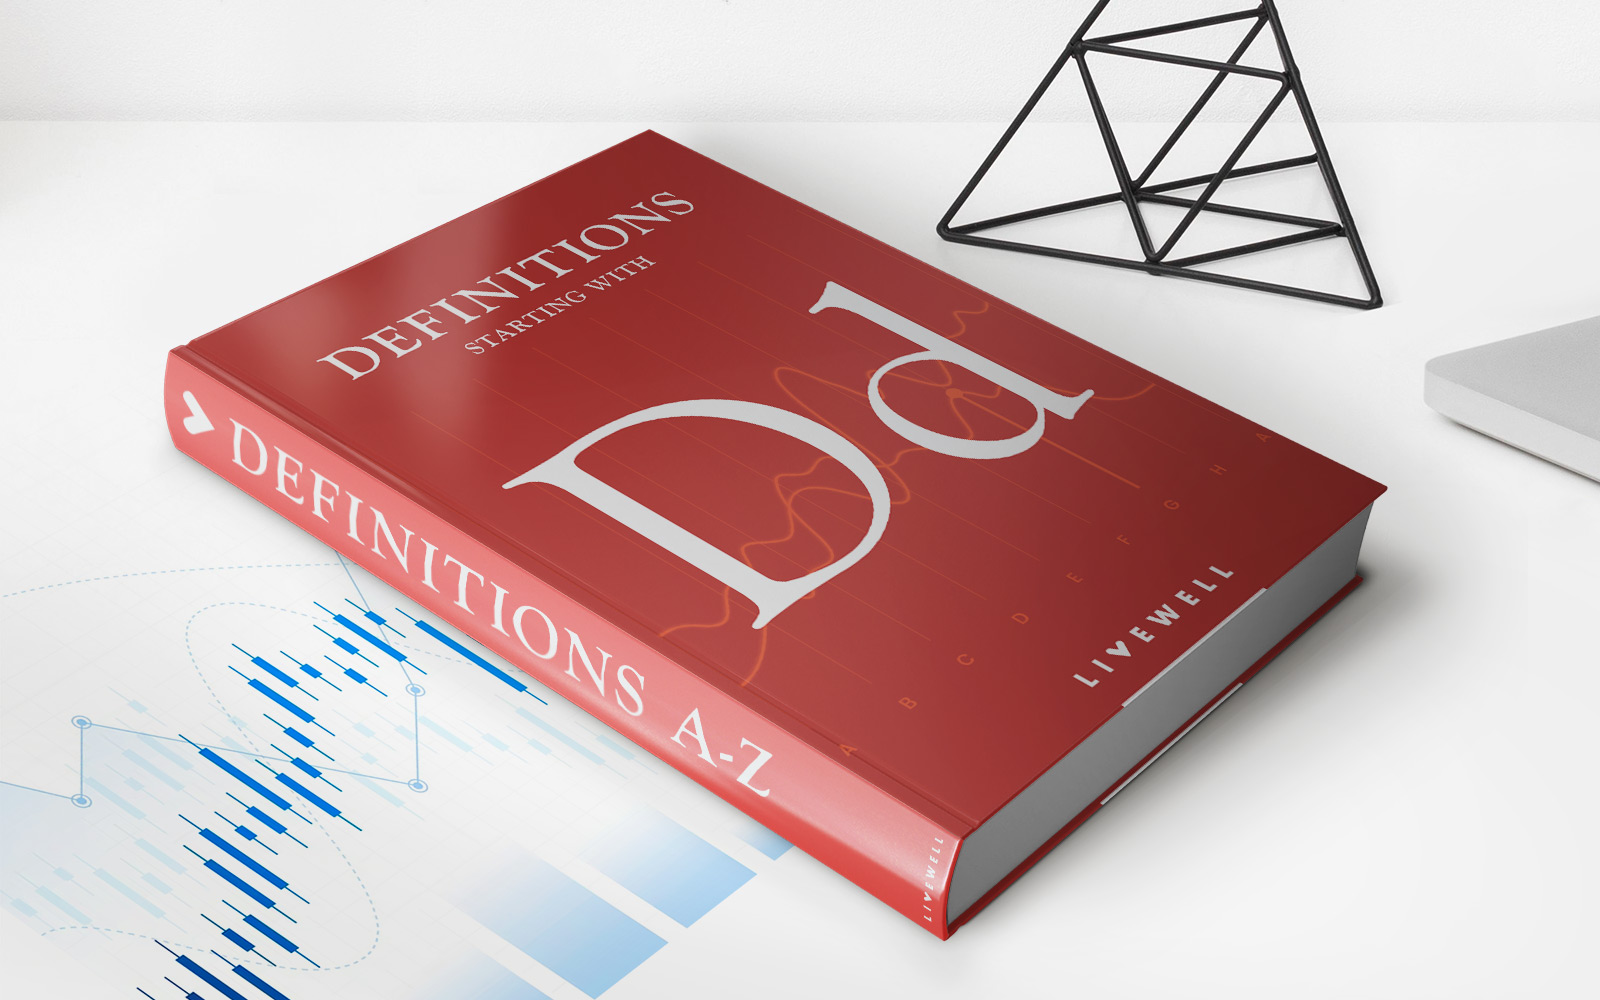 Darvas Box Theory: Definition And Role Of Nicolas Darvas